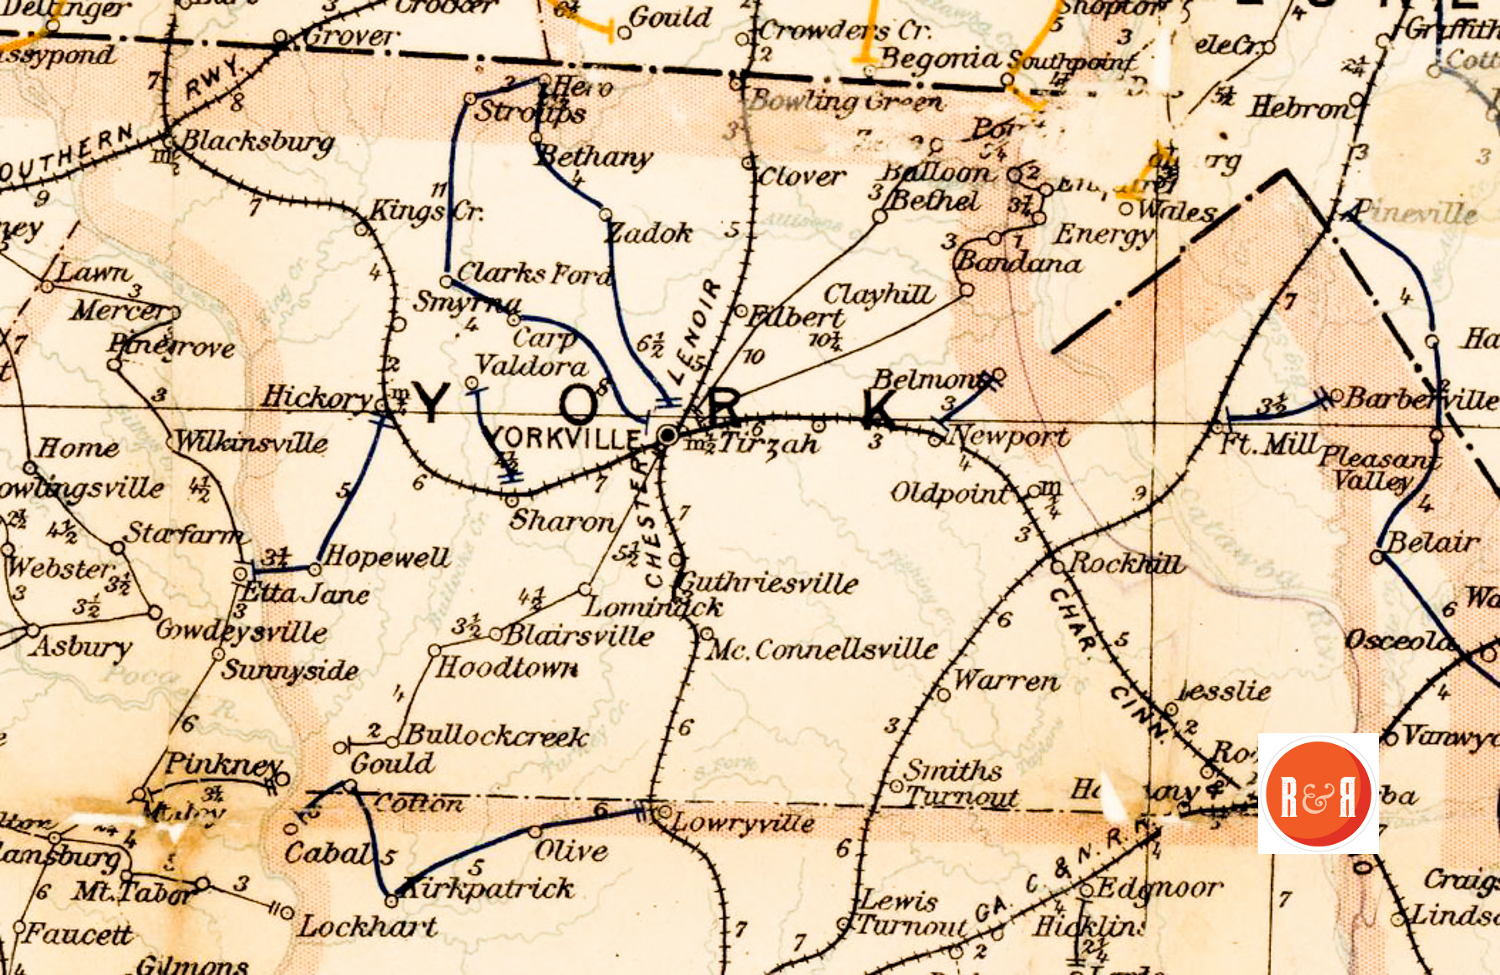 1850s Map Showing Guthriesville, S.C.